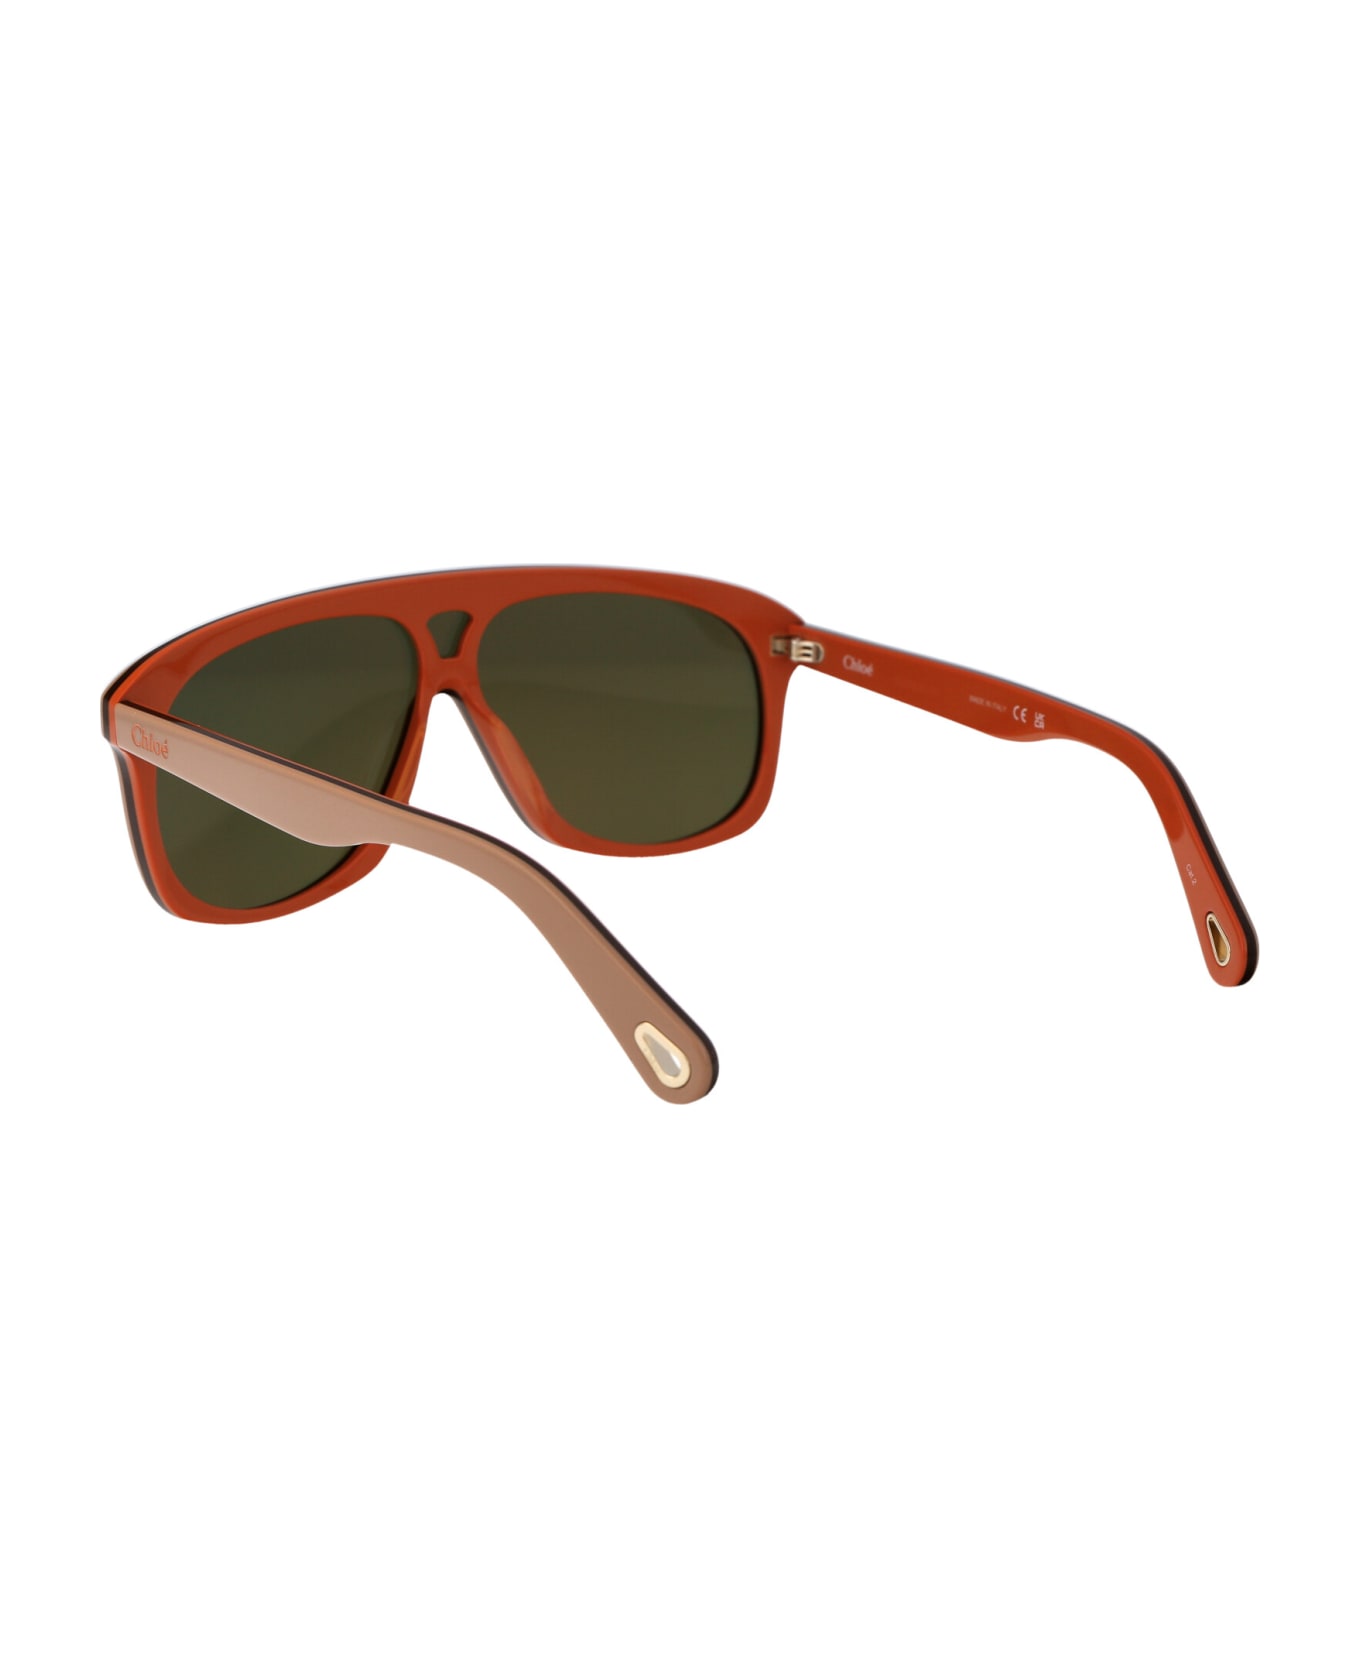 Chloé Eyewear Ch0212s Sunglasses - 003 BEIGE BEIGE PINK